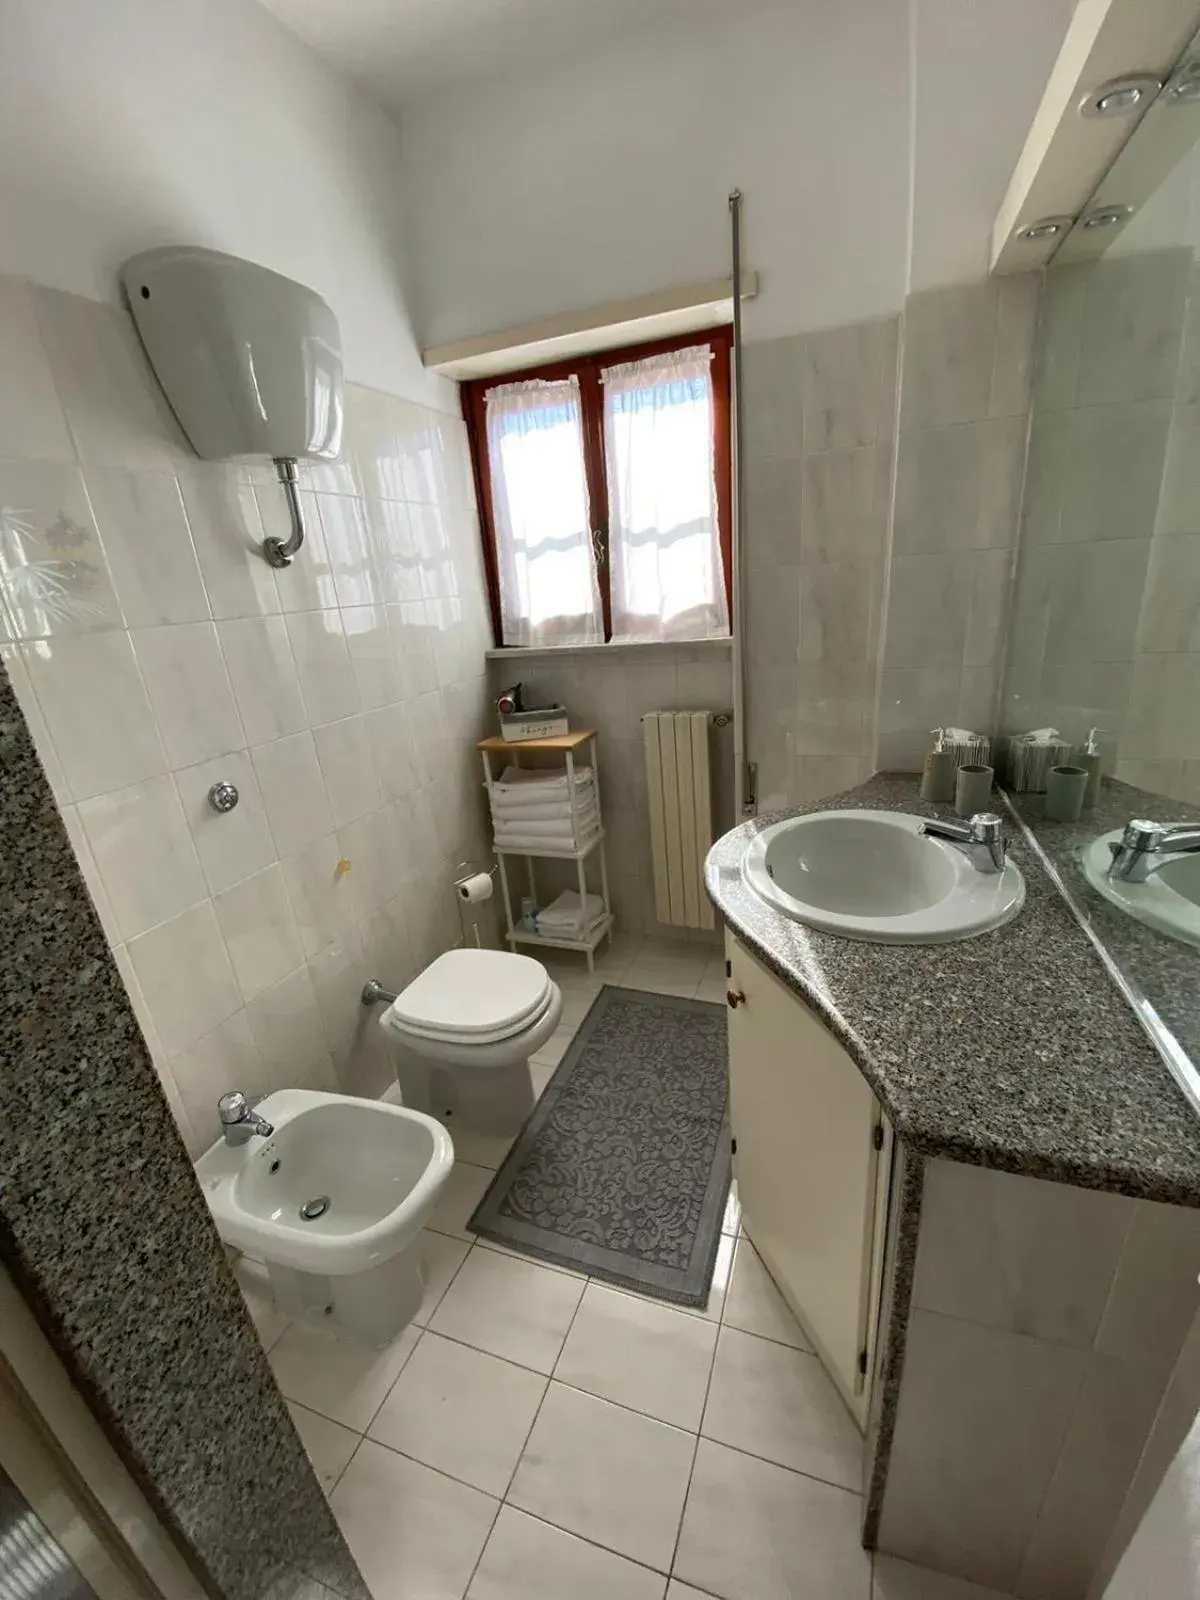 Bathroom in Hotel Ristorante Centosedici